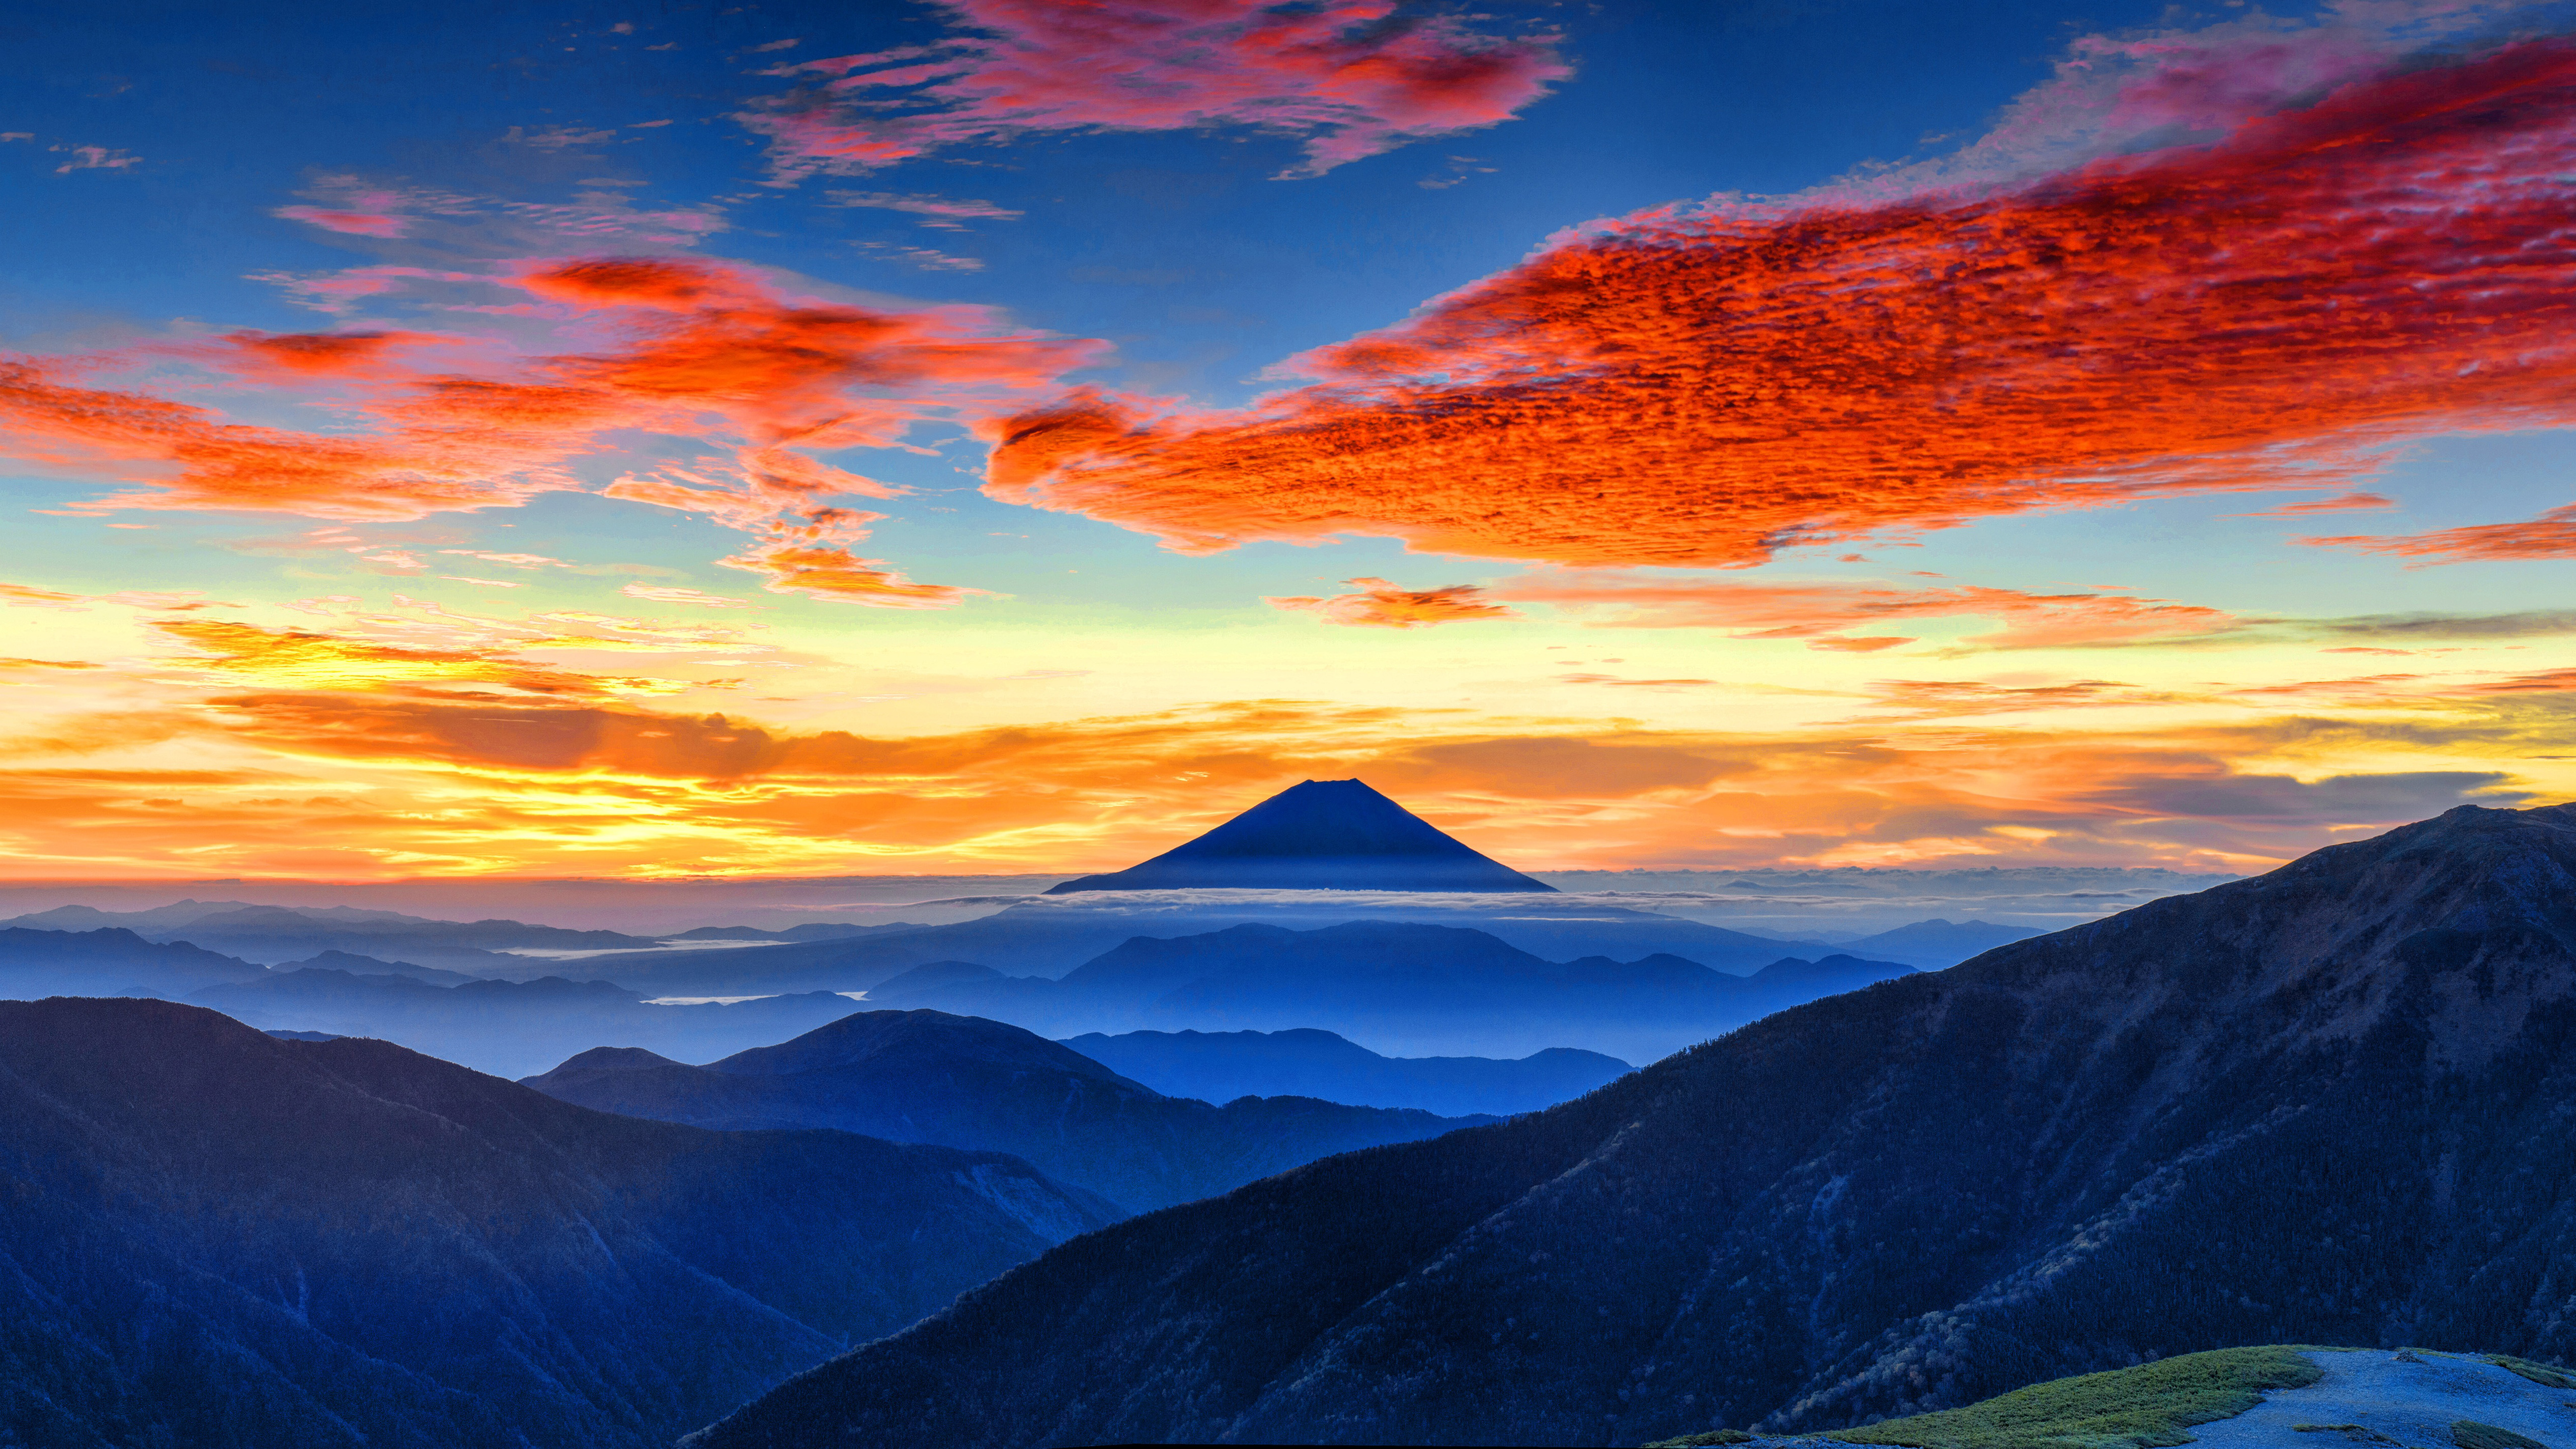 Cloud Horizon Japan Mount Fuji Mountain Sky 5120x2880